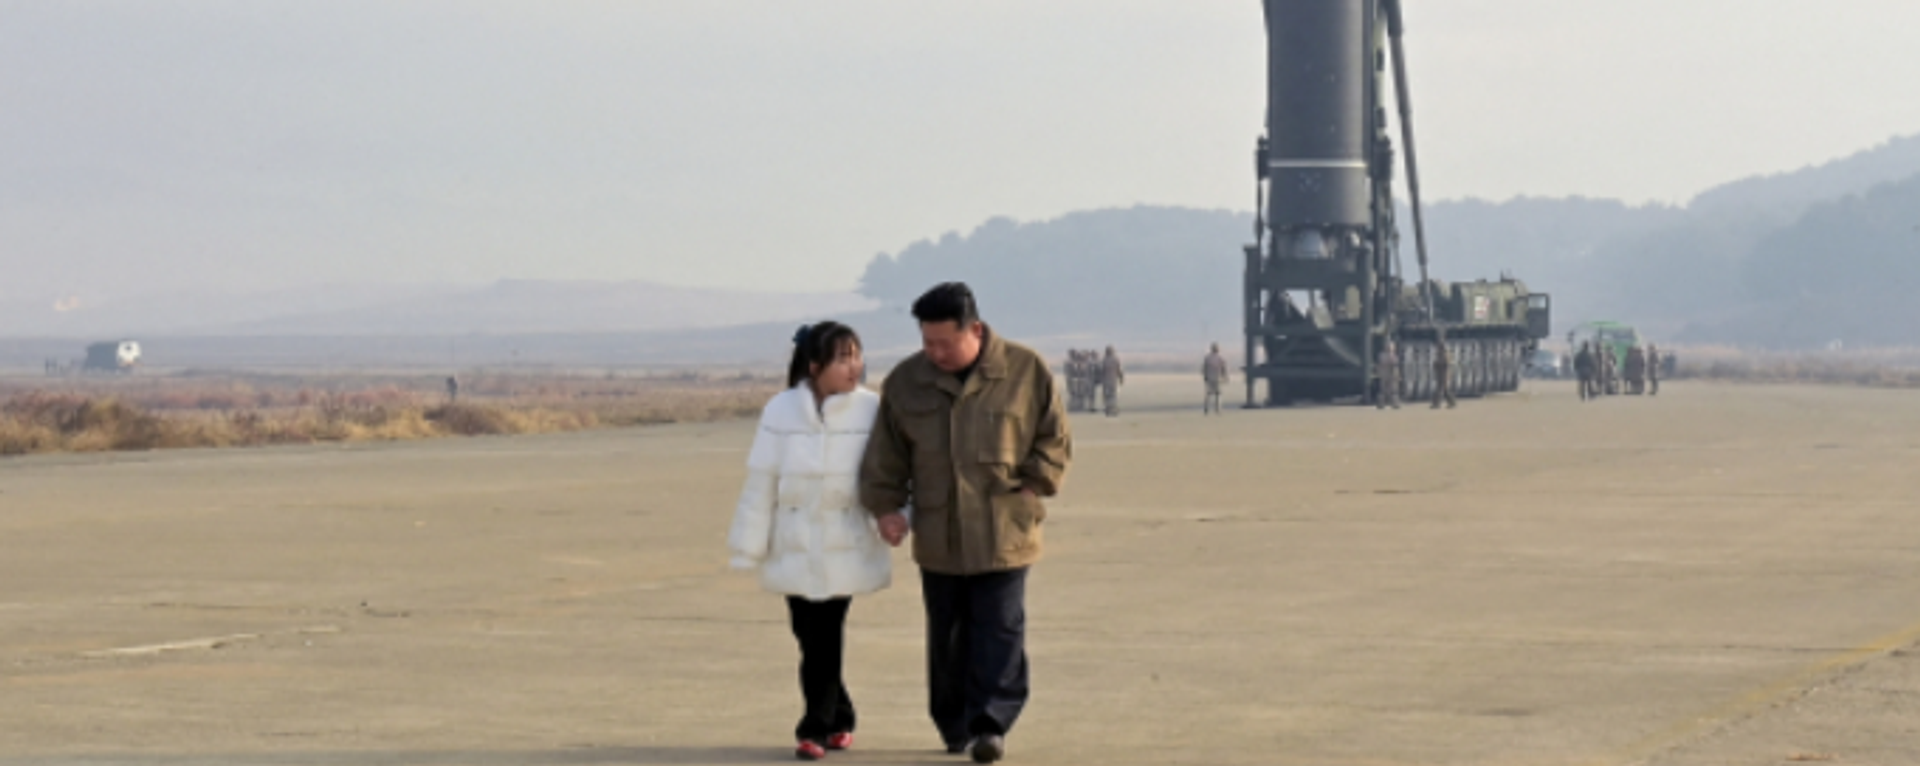 Kuzey Kore lideri ilk defa kızıyla görüntülendi - Sputnik Türkiye, 1920, 19.11.2022